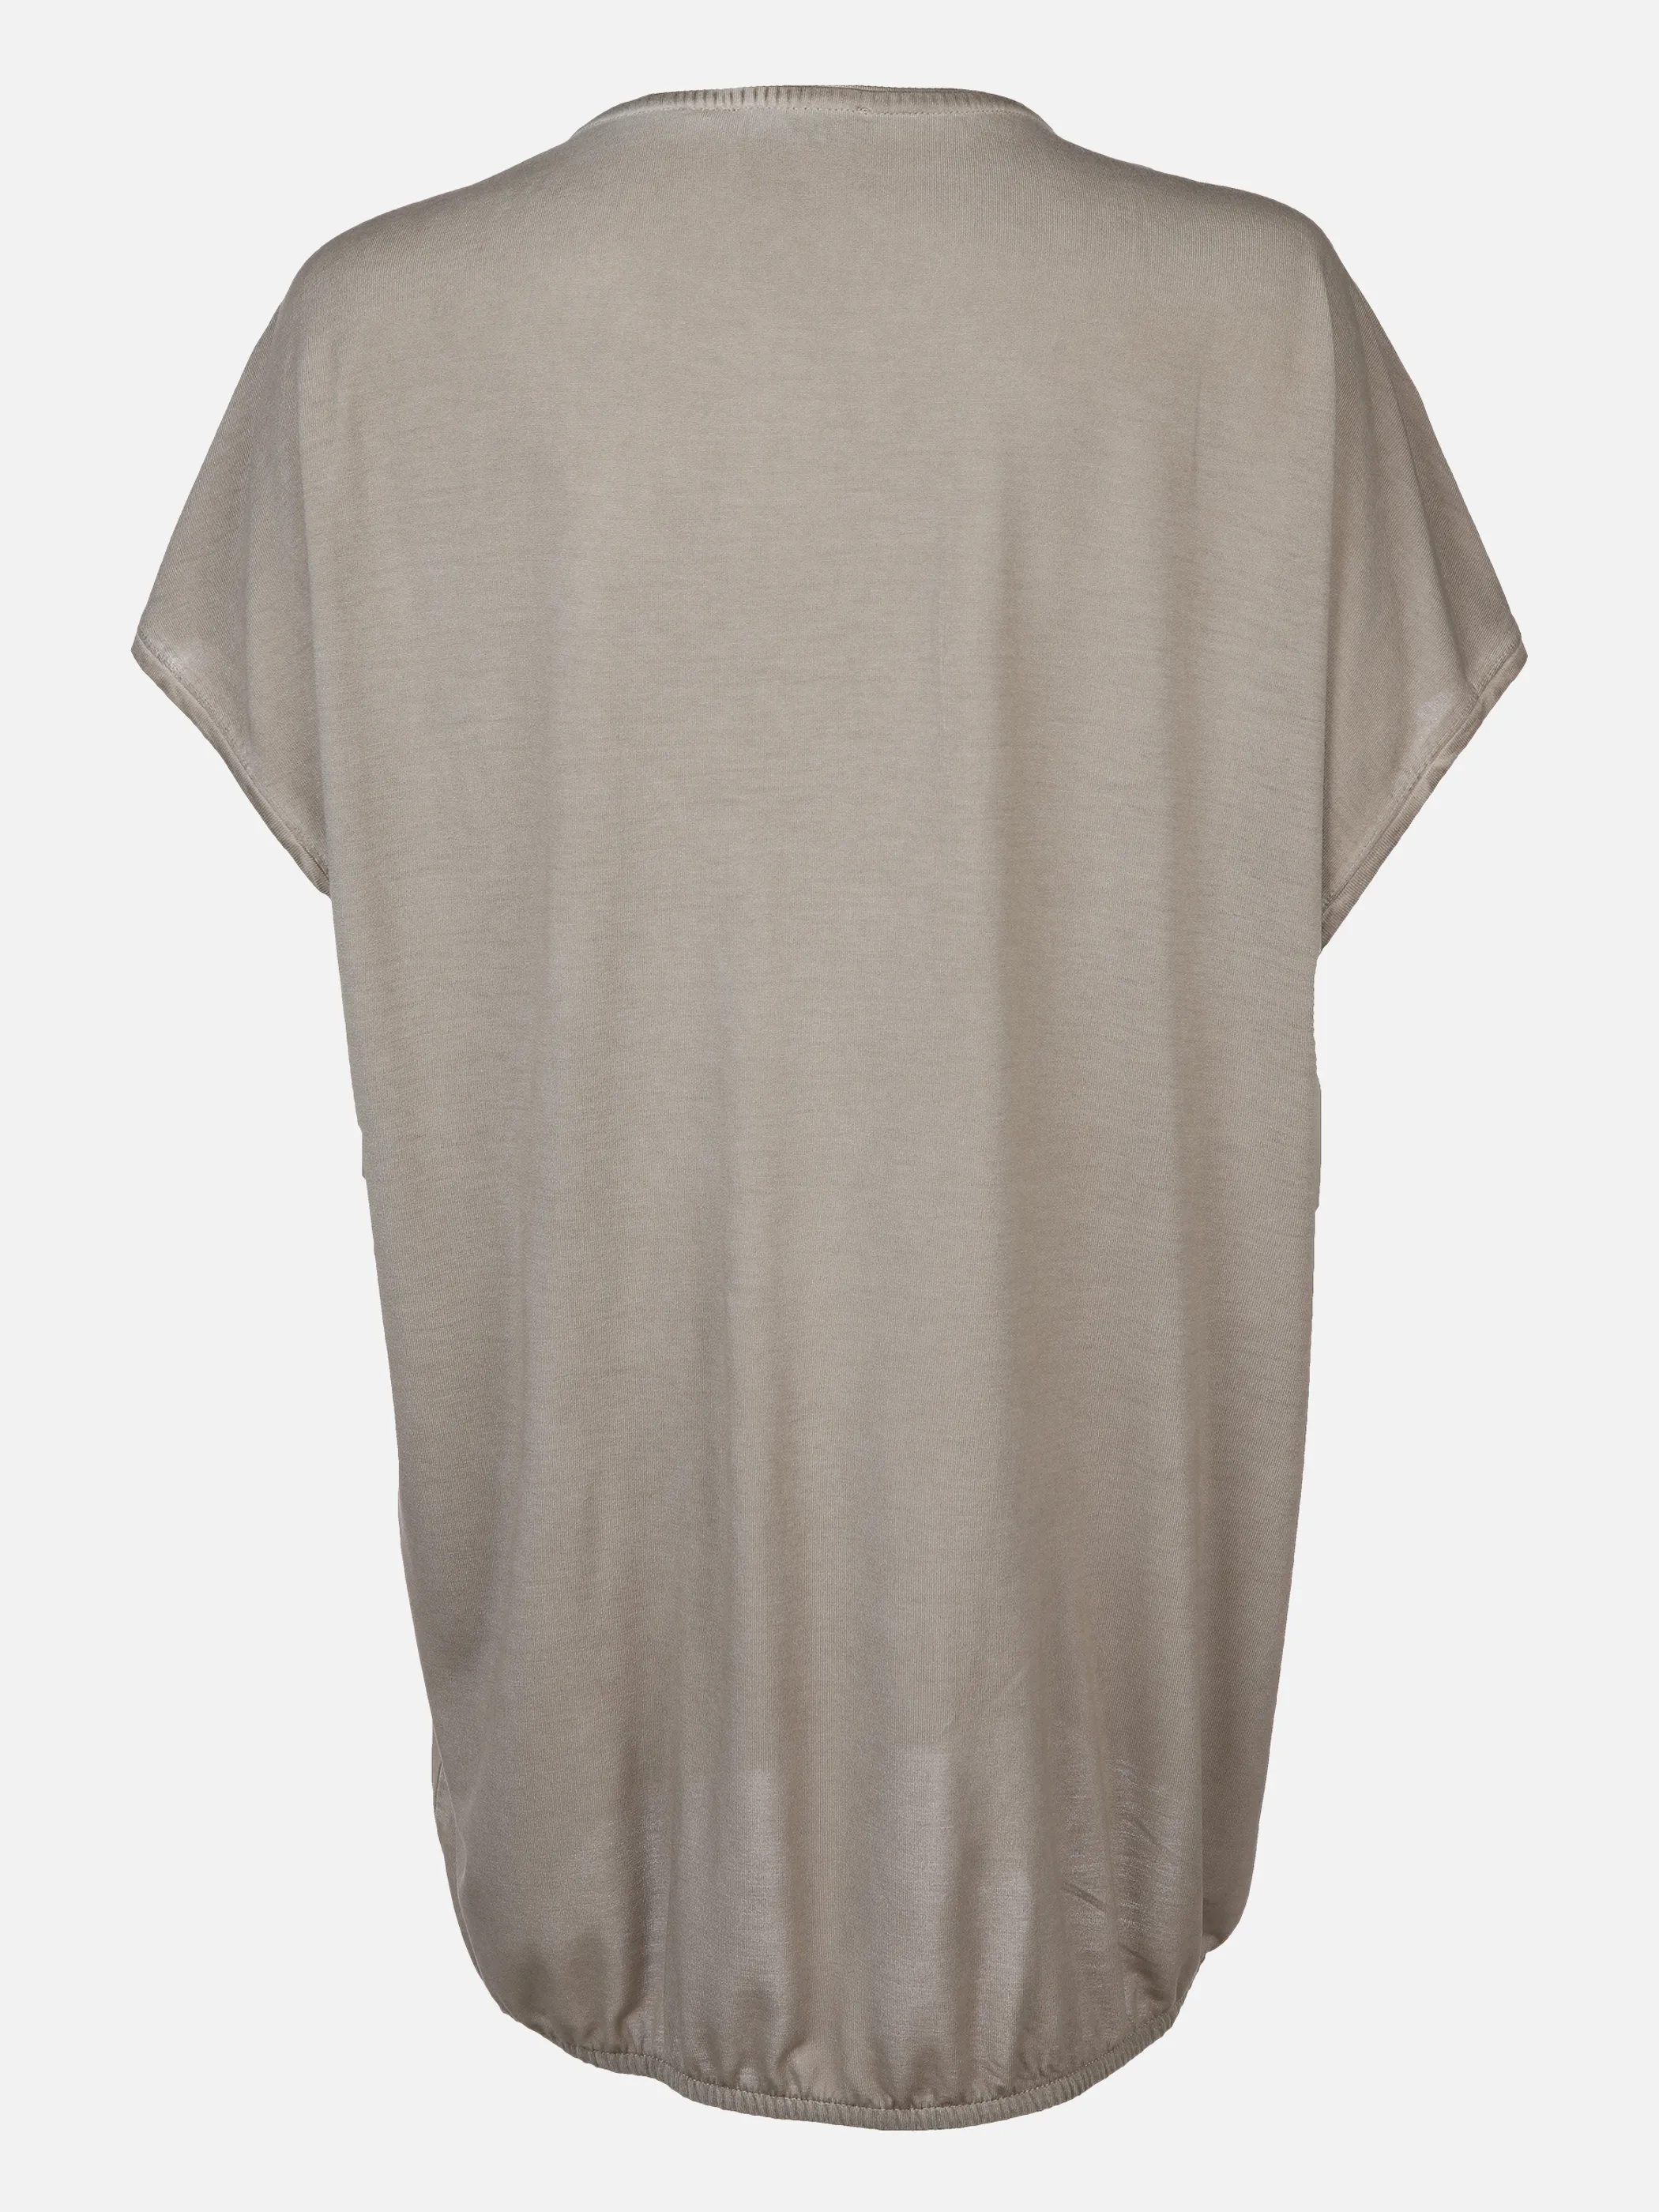 Lisa Tossa Da-Materialmix-Shirt m.Frontpr Braun 878258 CAMEL 2